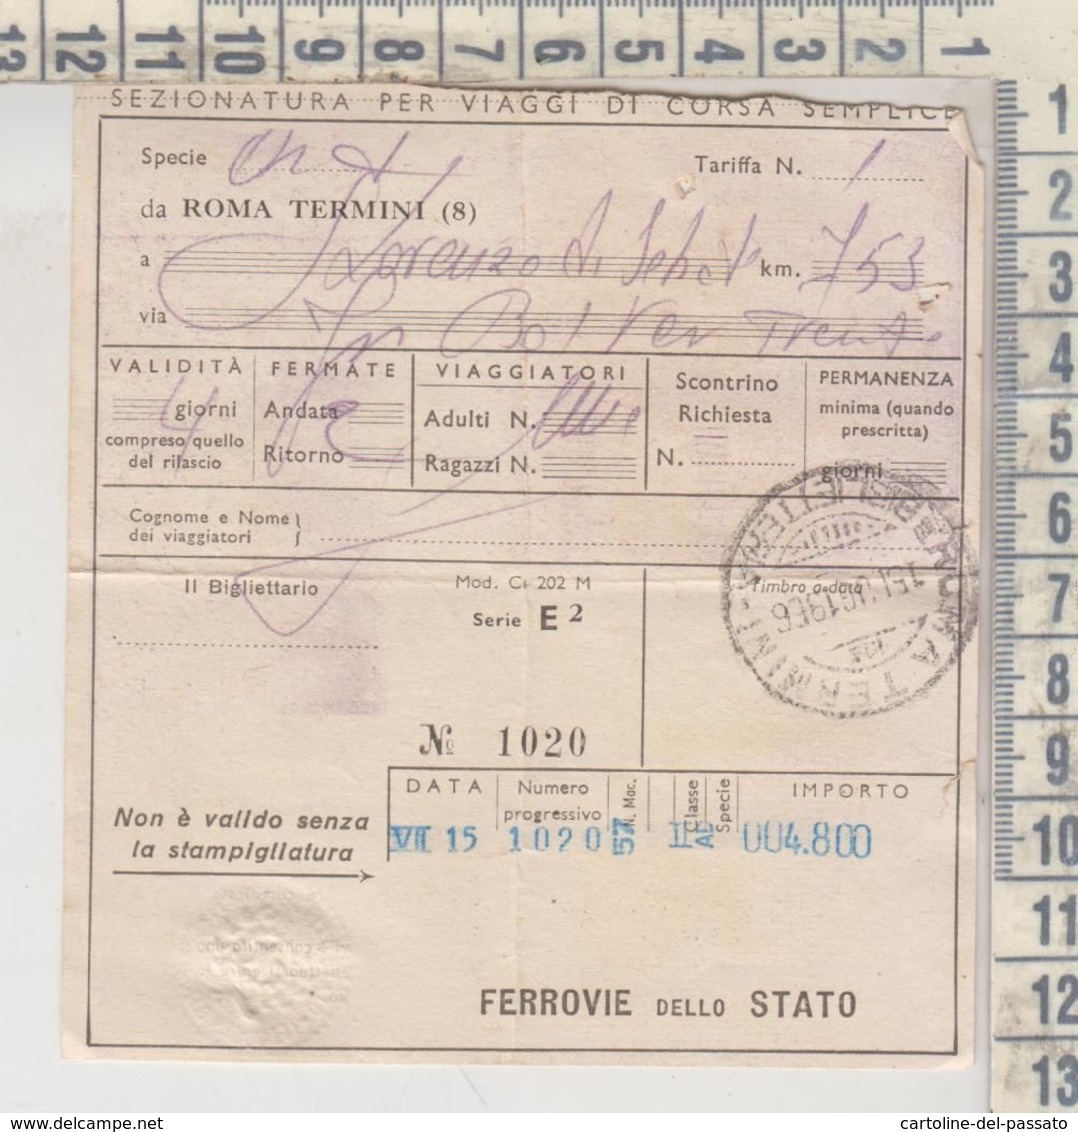 Biglietto Ticket Buillet FERROVIE DELLO STATO S. LORENZO DI SEBATO BOLZANO - Europe